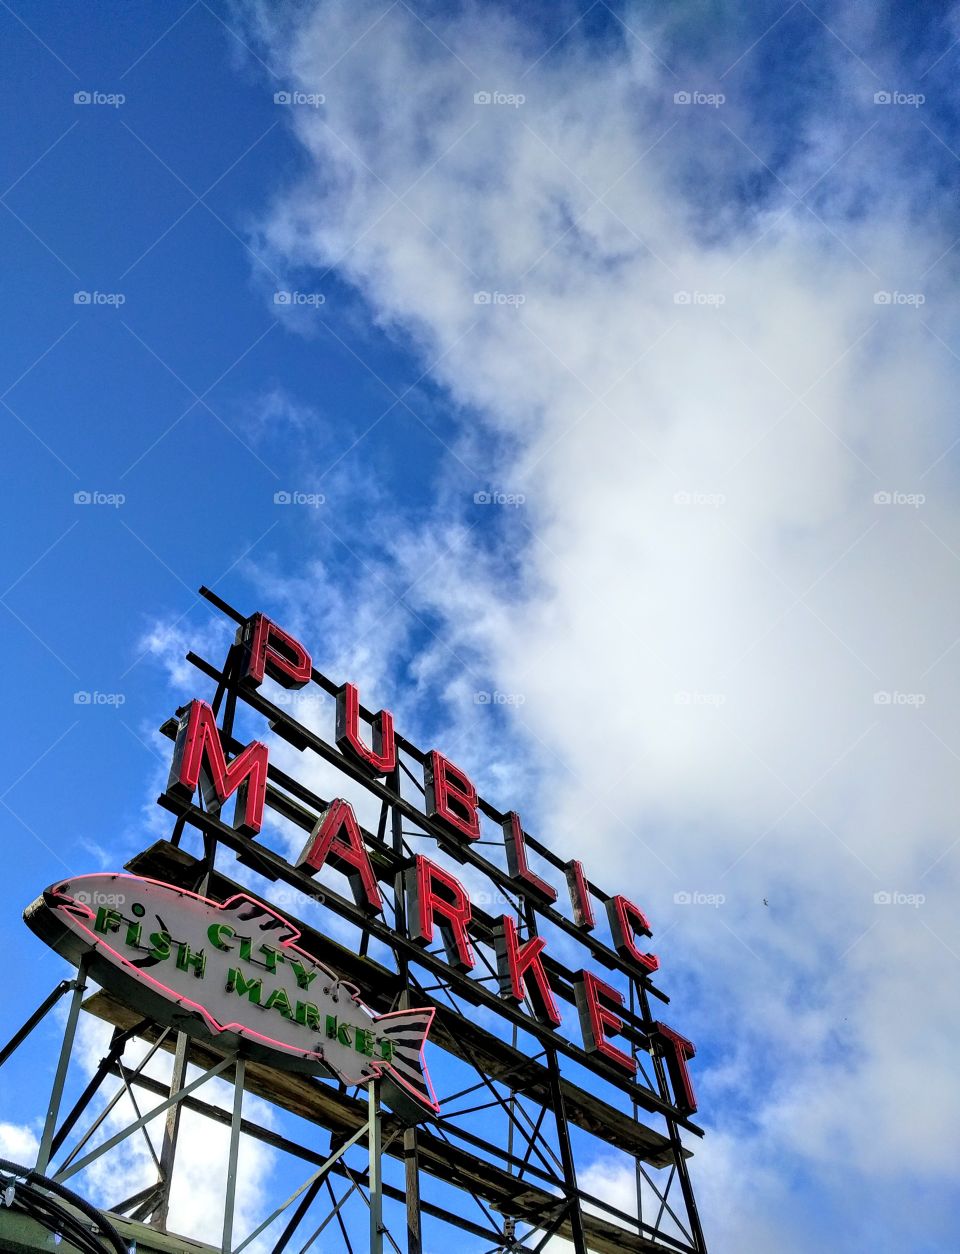 Pikes Place Market Seattle, WA